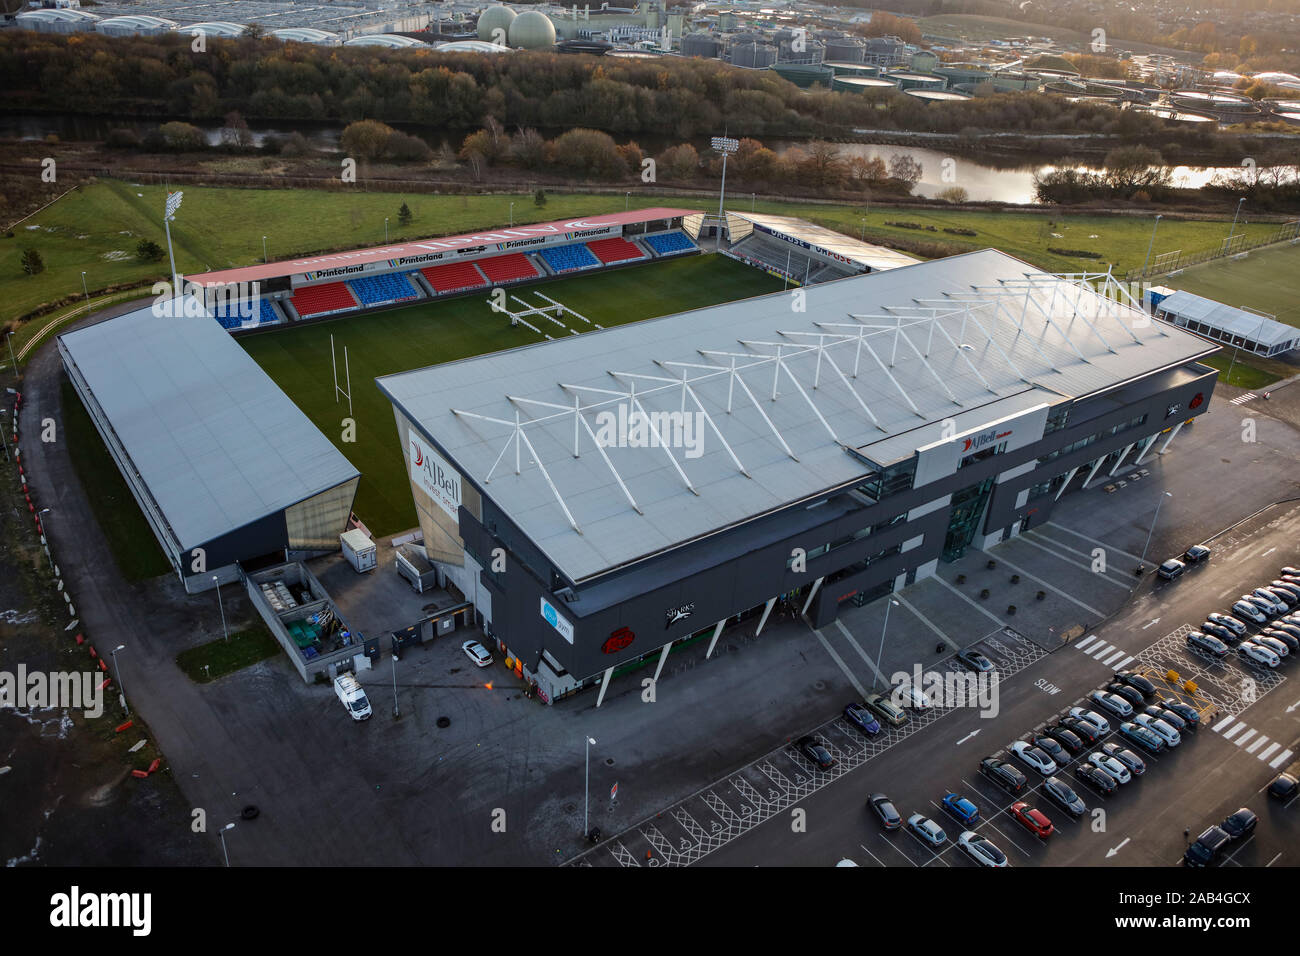 Vista aérea del estadio AJ Bell, Salford, Manchester, Reino Unido Foto de stock